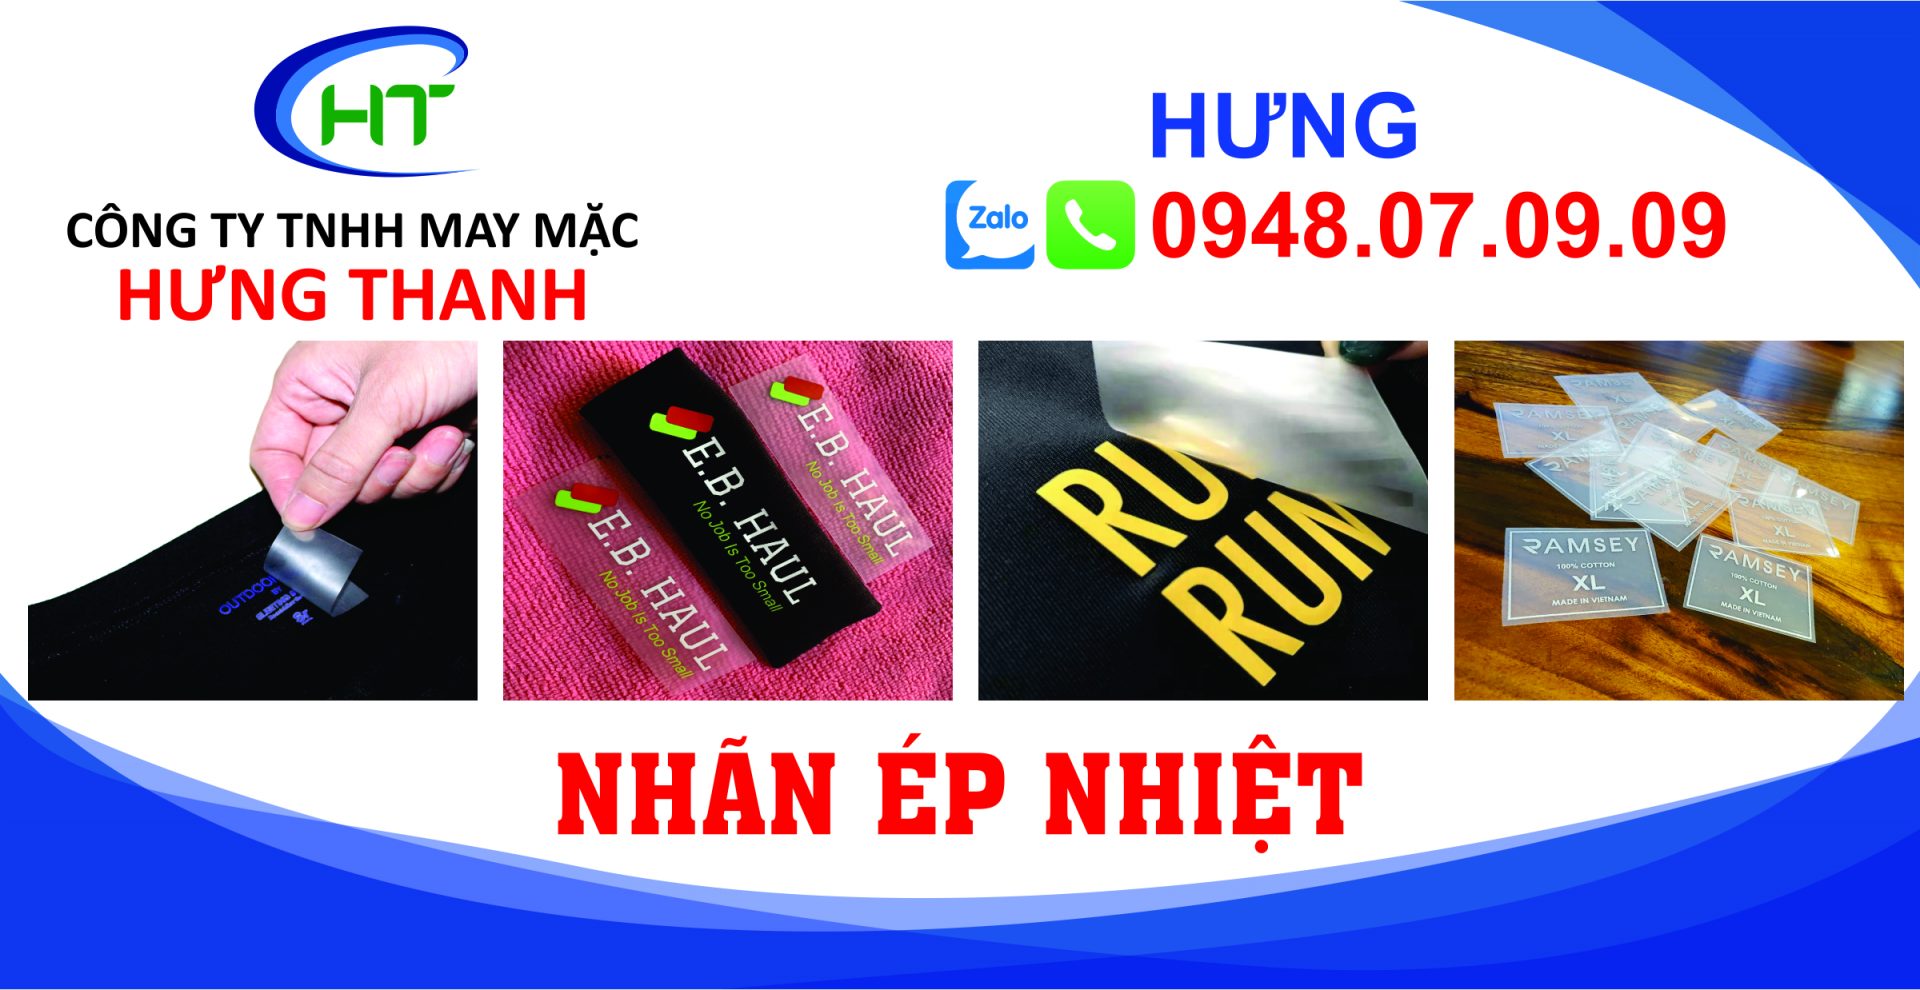 nhan-ep-nhiet-Hung-Thanh-1.jpg